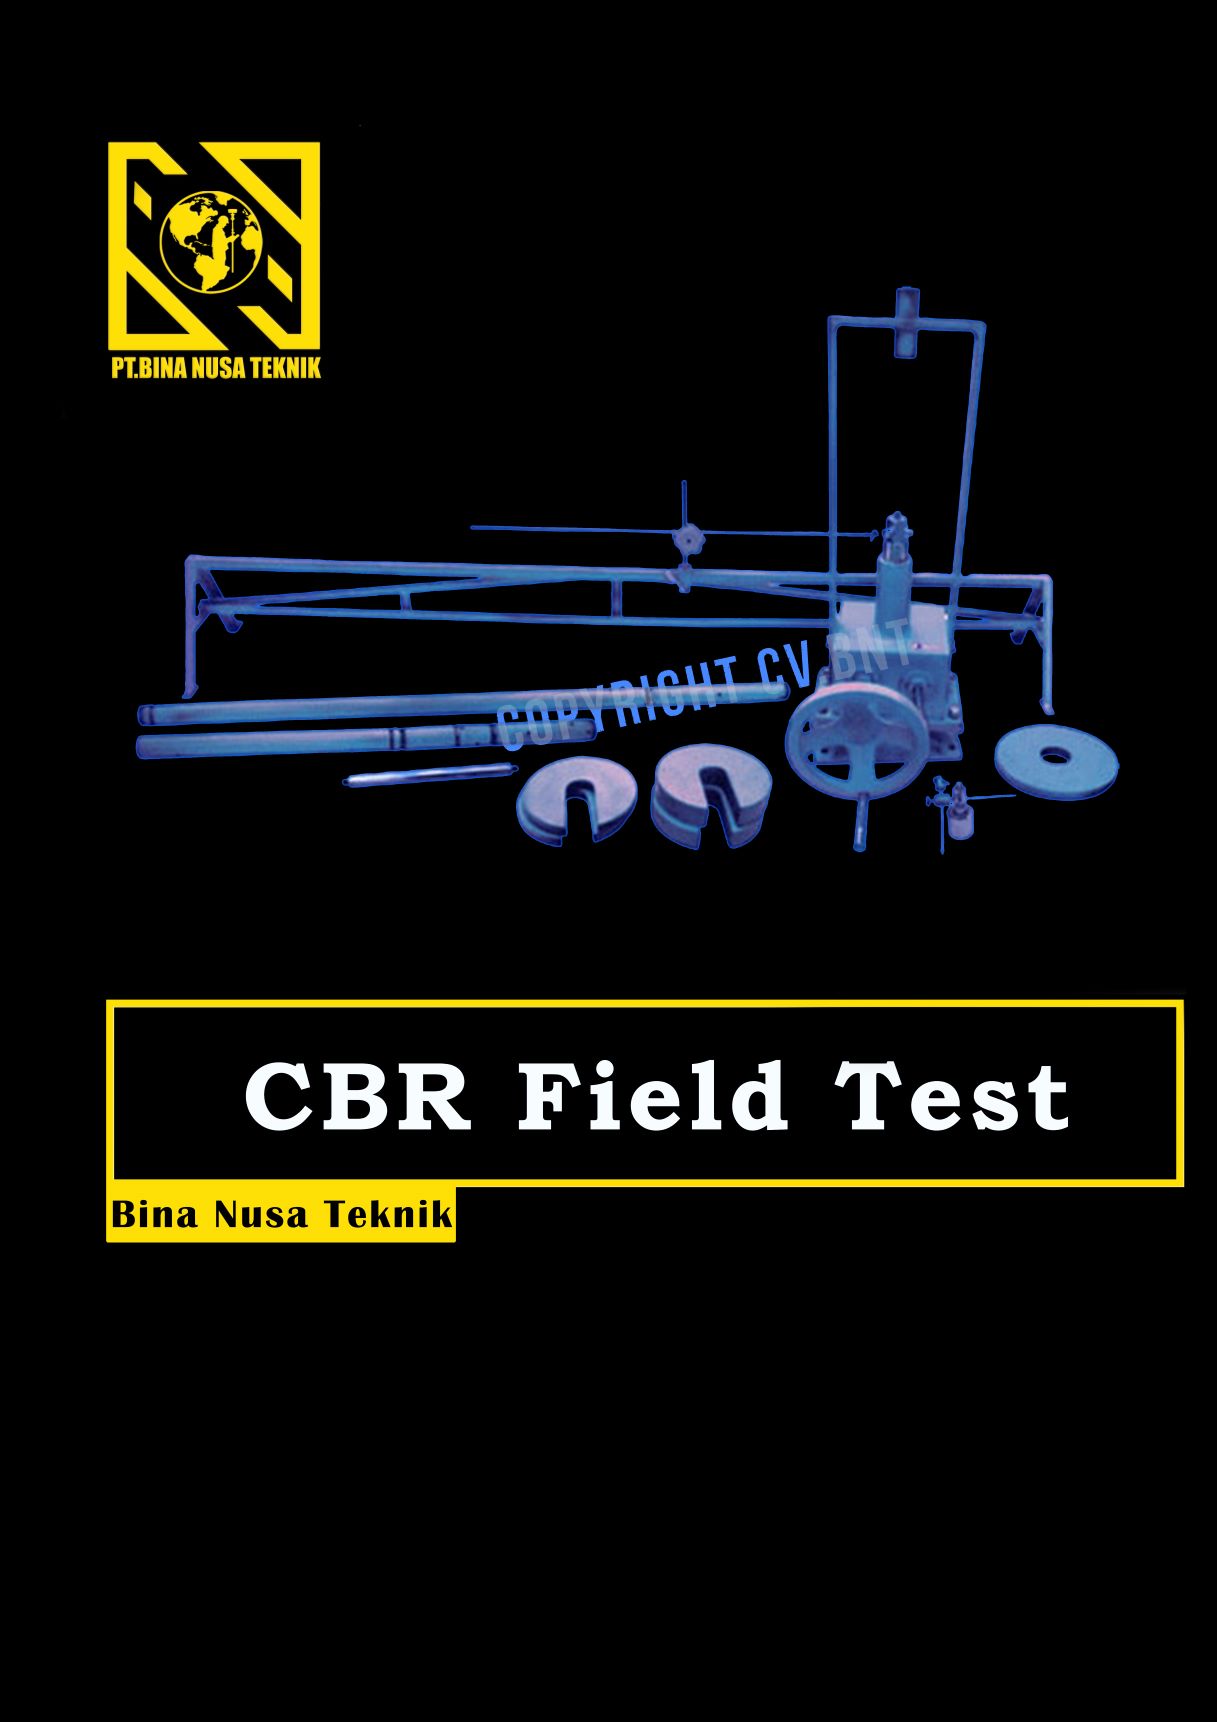 cbr field test